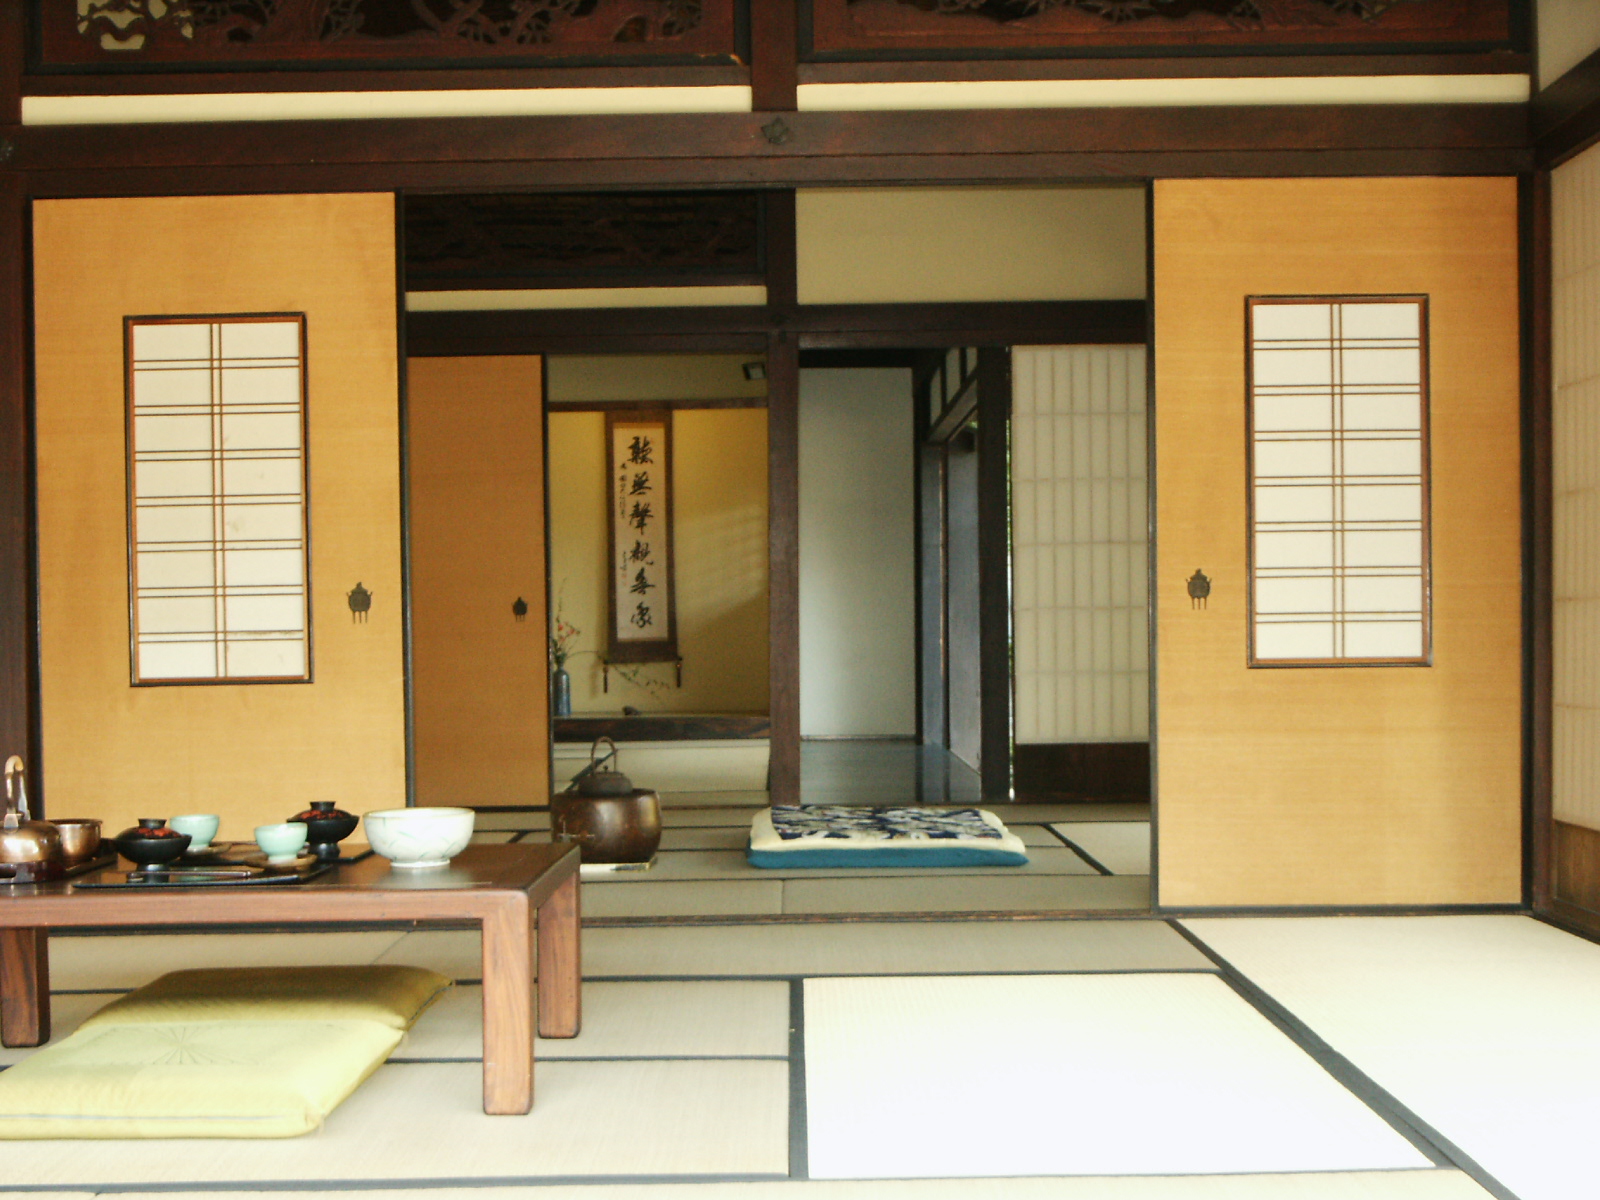 Installer une cloison japonaise permet un gain de place incontestable. © Dominus Vobiscum, Flickr, CC BY-SA 2.0